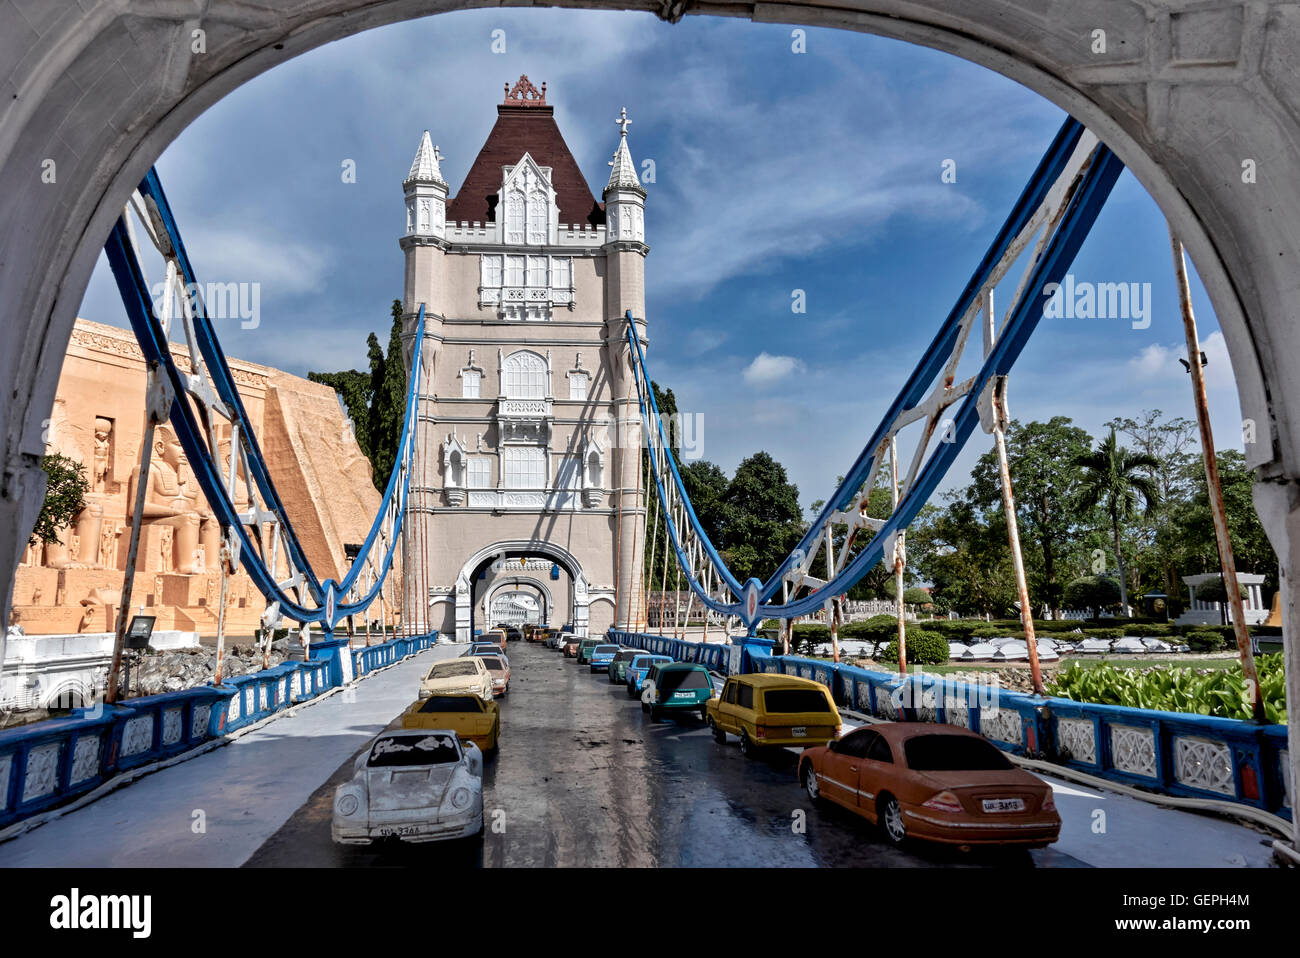 Monde miniature. Tower Bridge modèle à échelle de Londres . Mini Siam parc à thème, Pattaya Thaïlande, S. E. Asie Banque D'Images